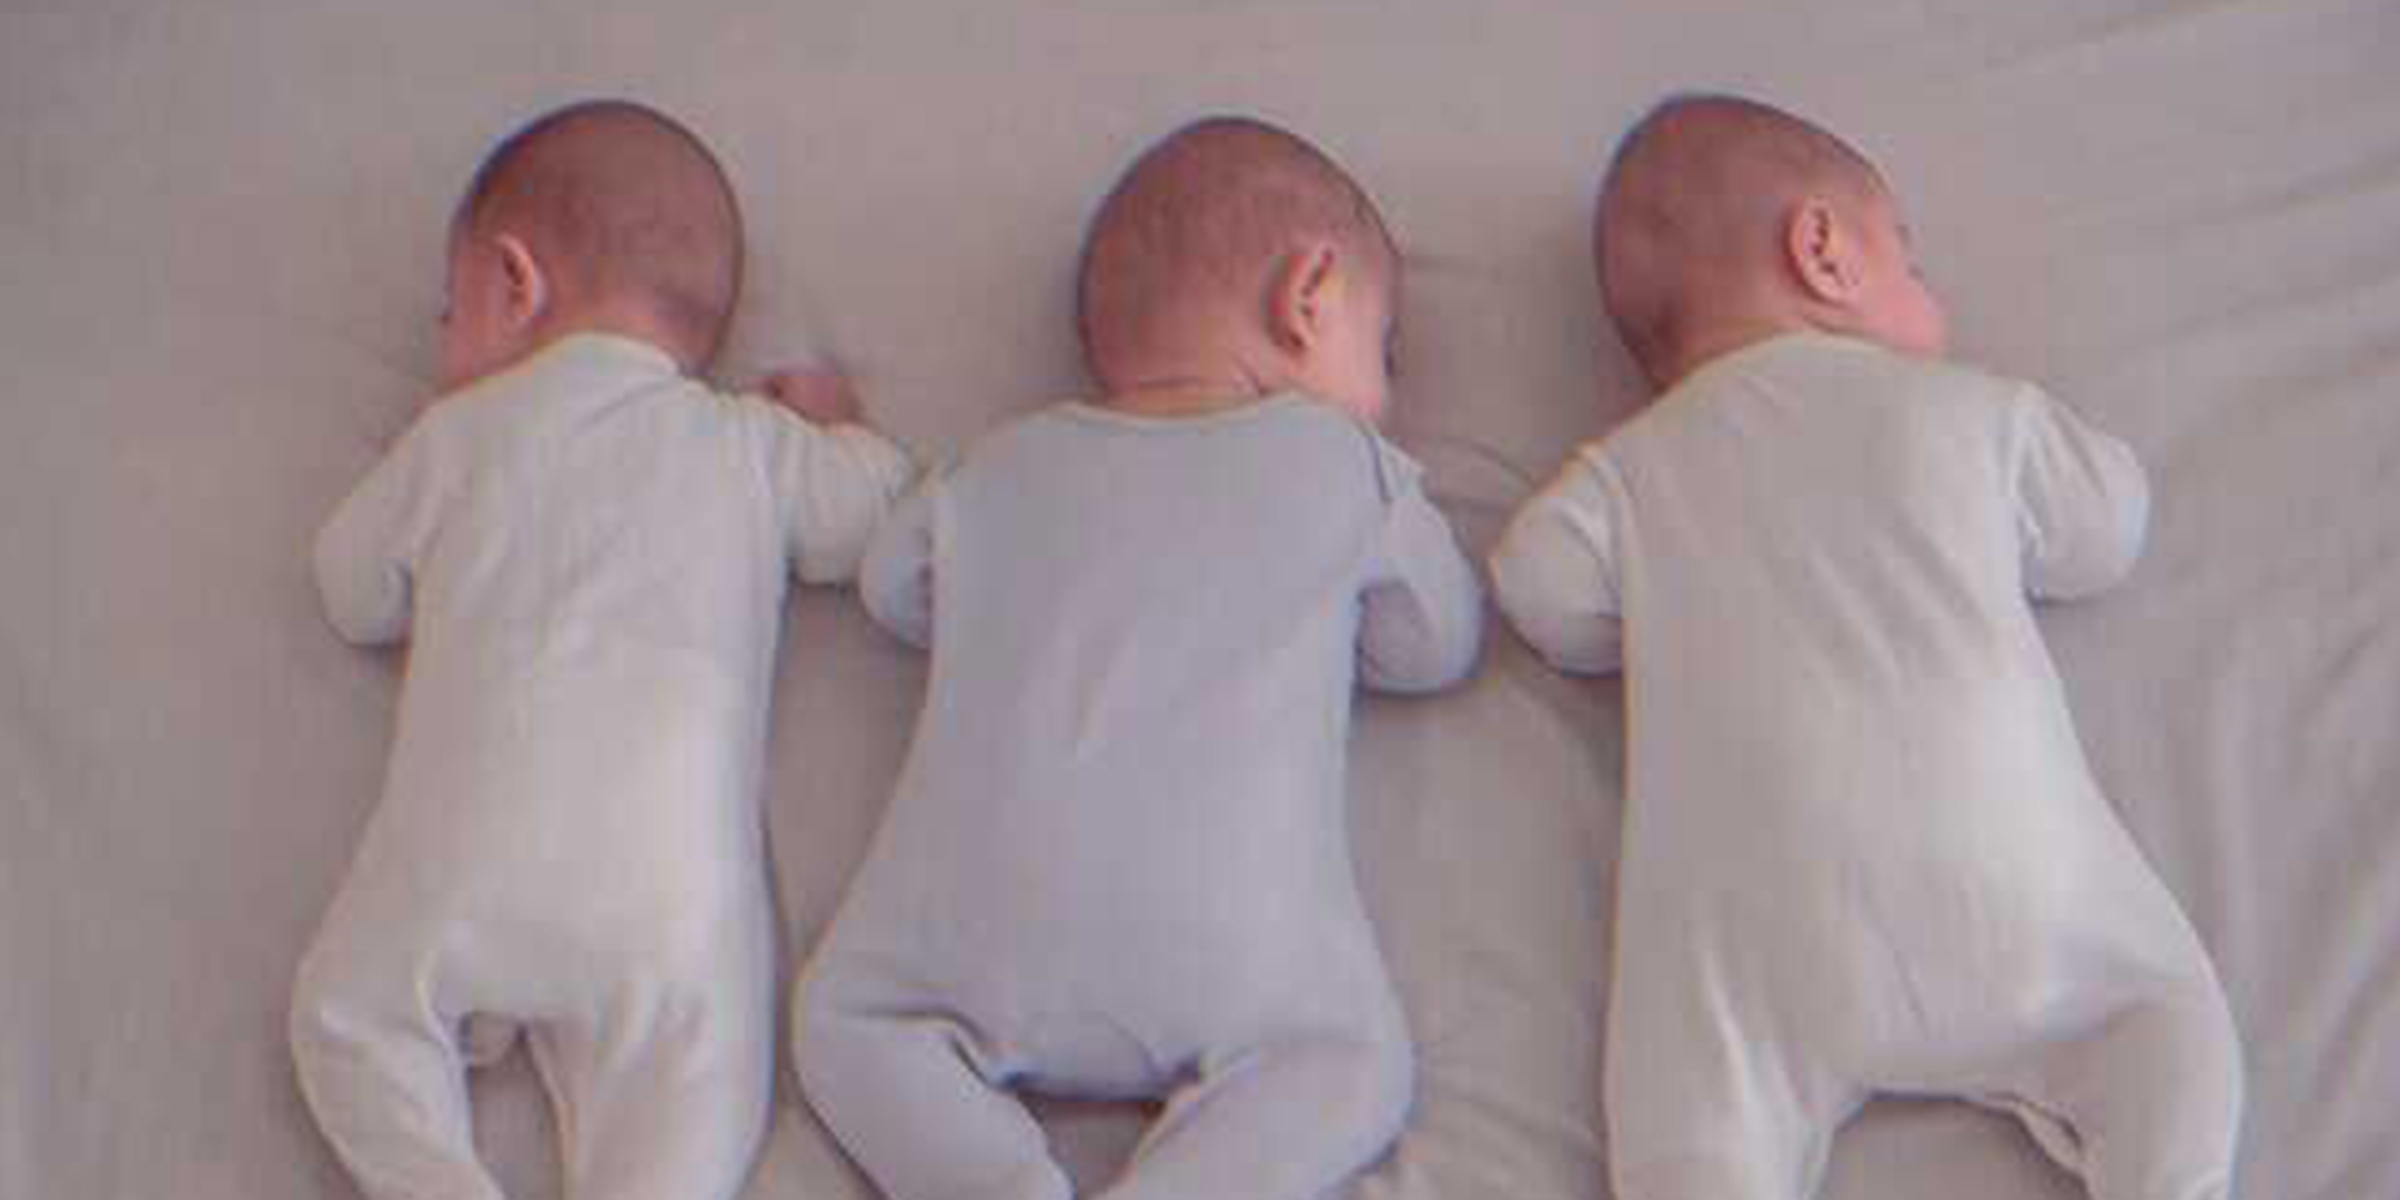 Trois bébés allongés dans un lit | Source : Unsplash